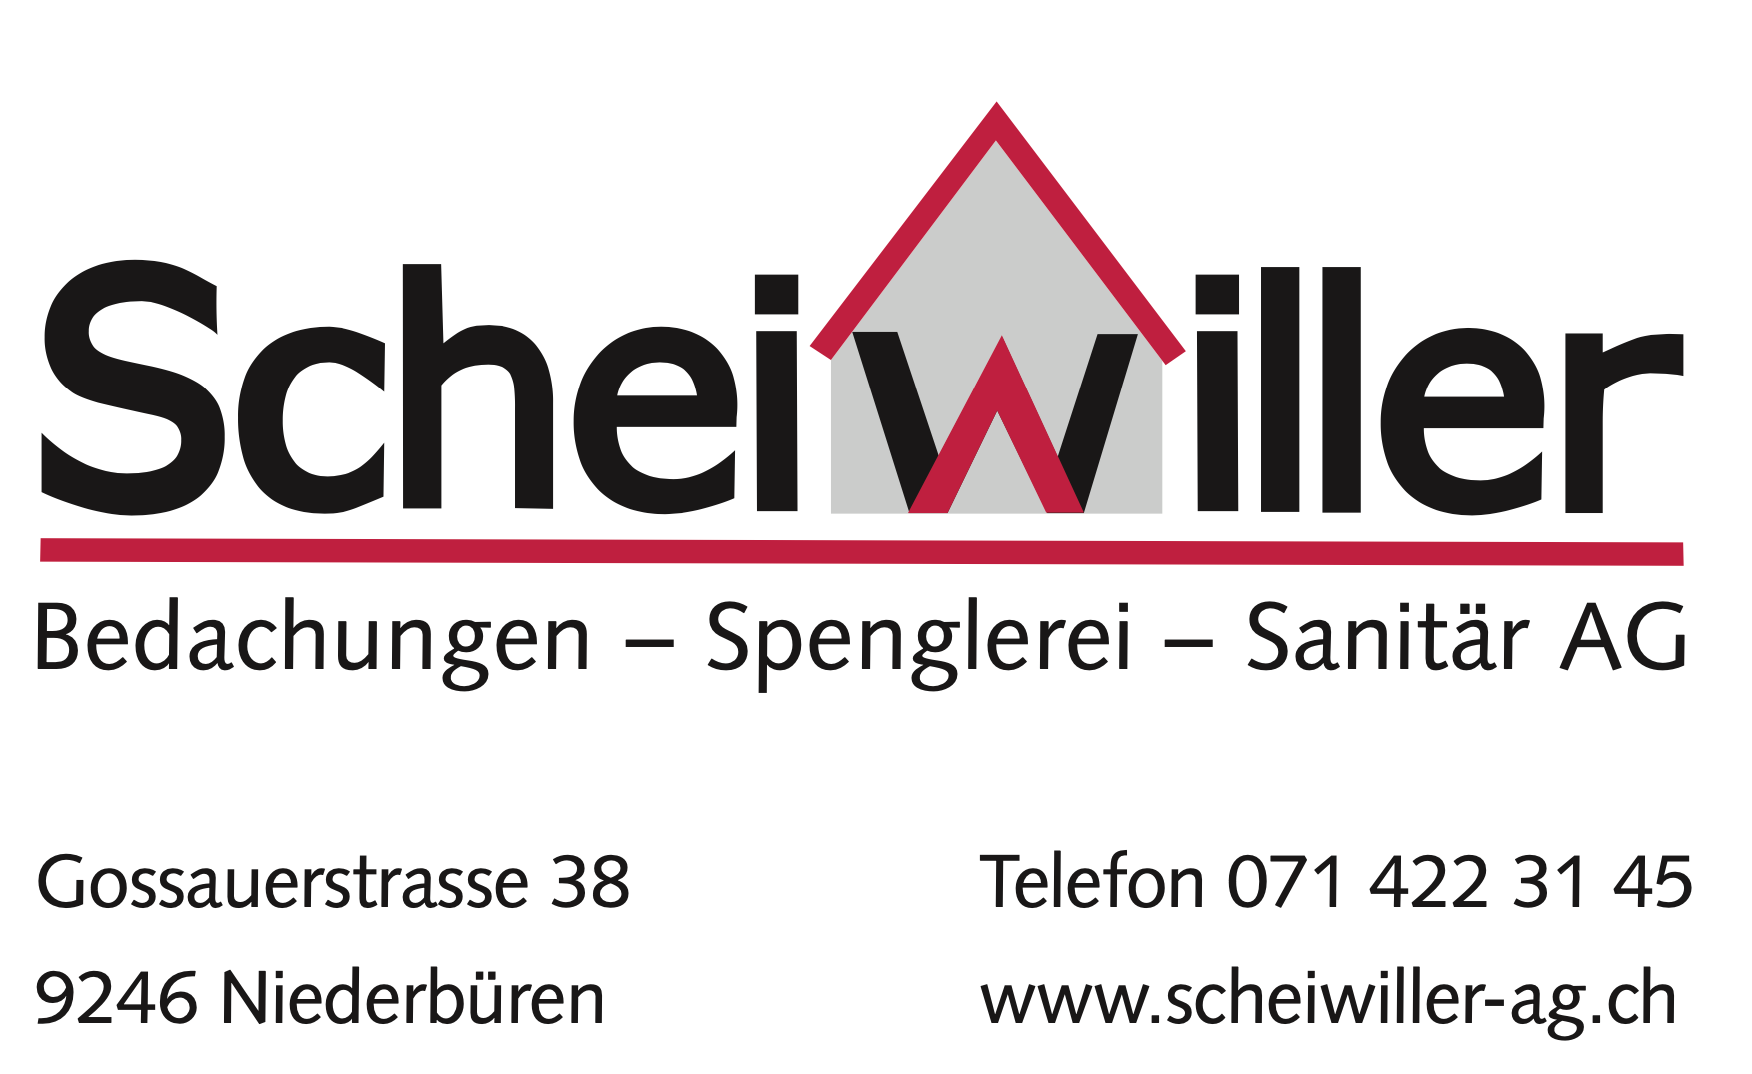 Scheiwiller Bedachungen-Spenglerei- Sanitär AG